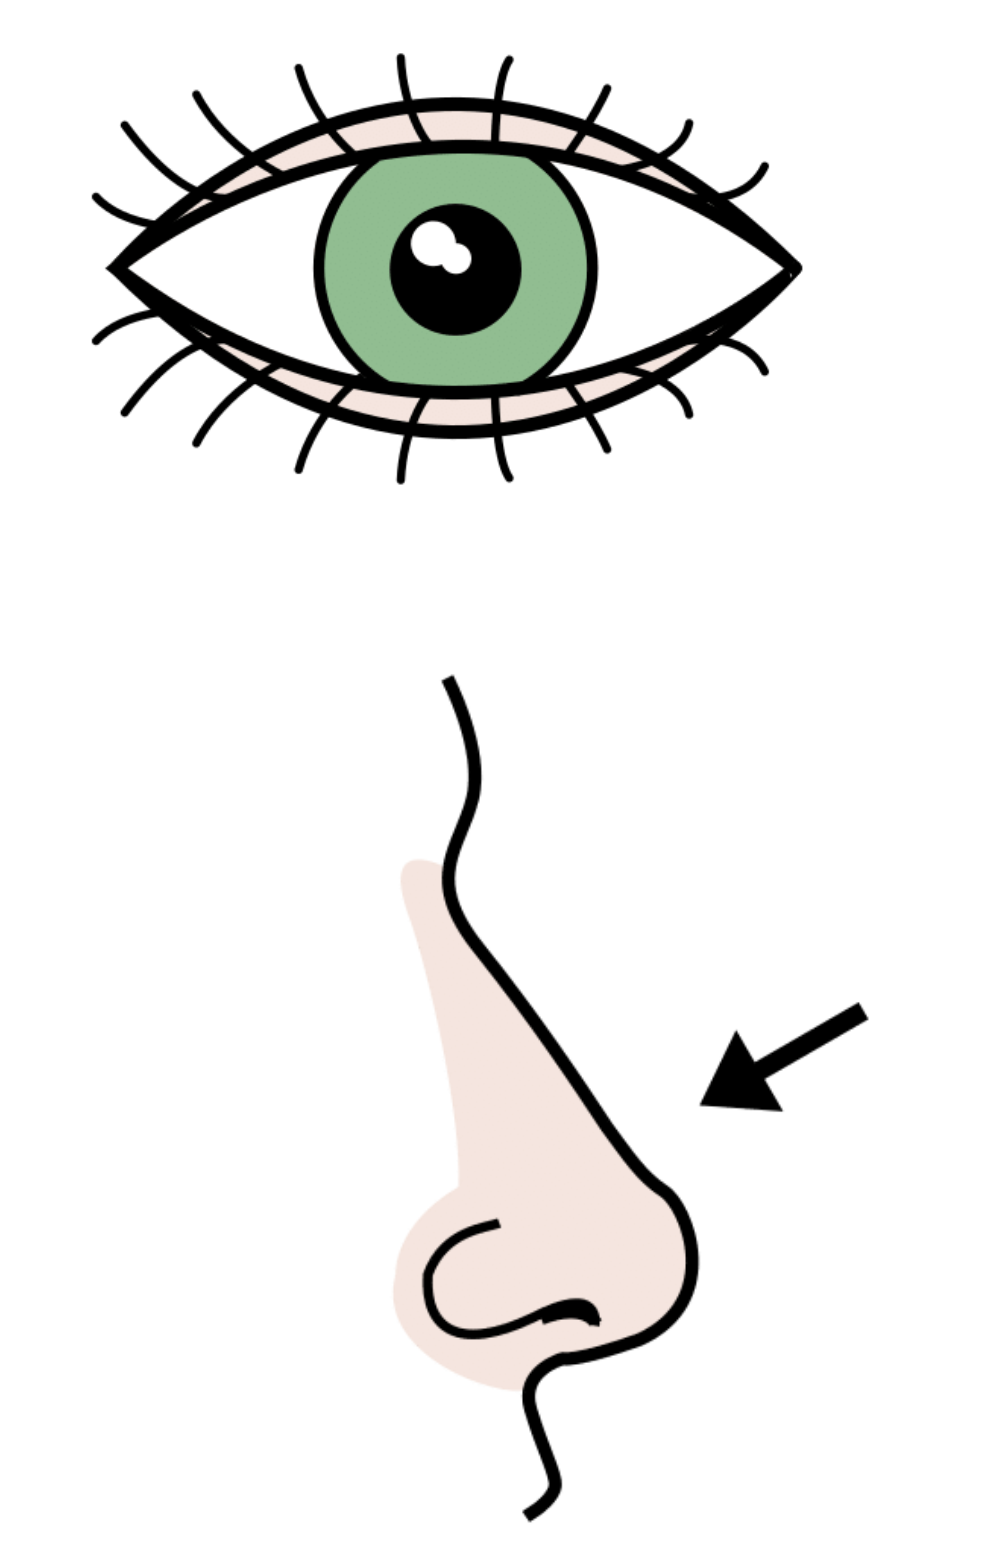 La imagen muestra el dibujo de un ojo y una nariz